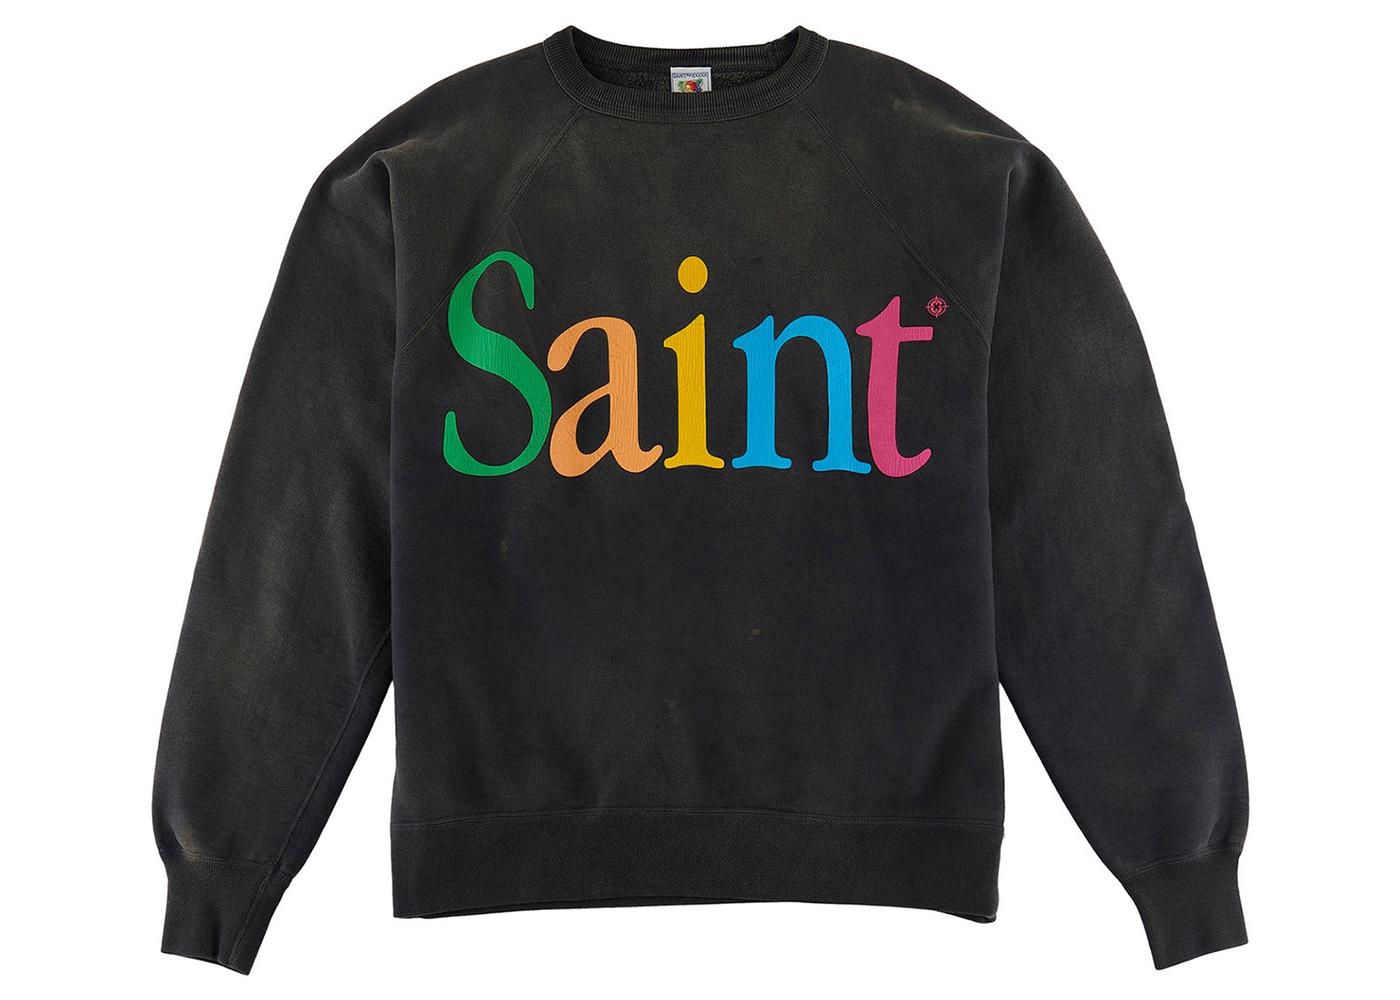 Saint Mxxxxxx Colorful Saint Crewneck Sweatshirt Vintage Black